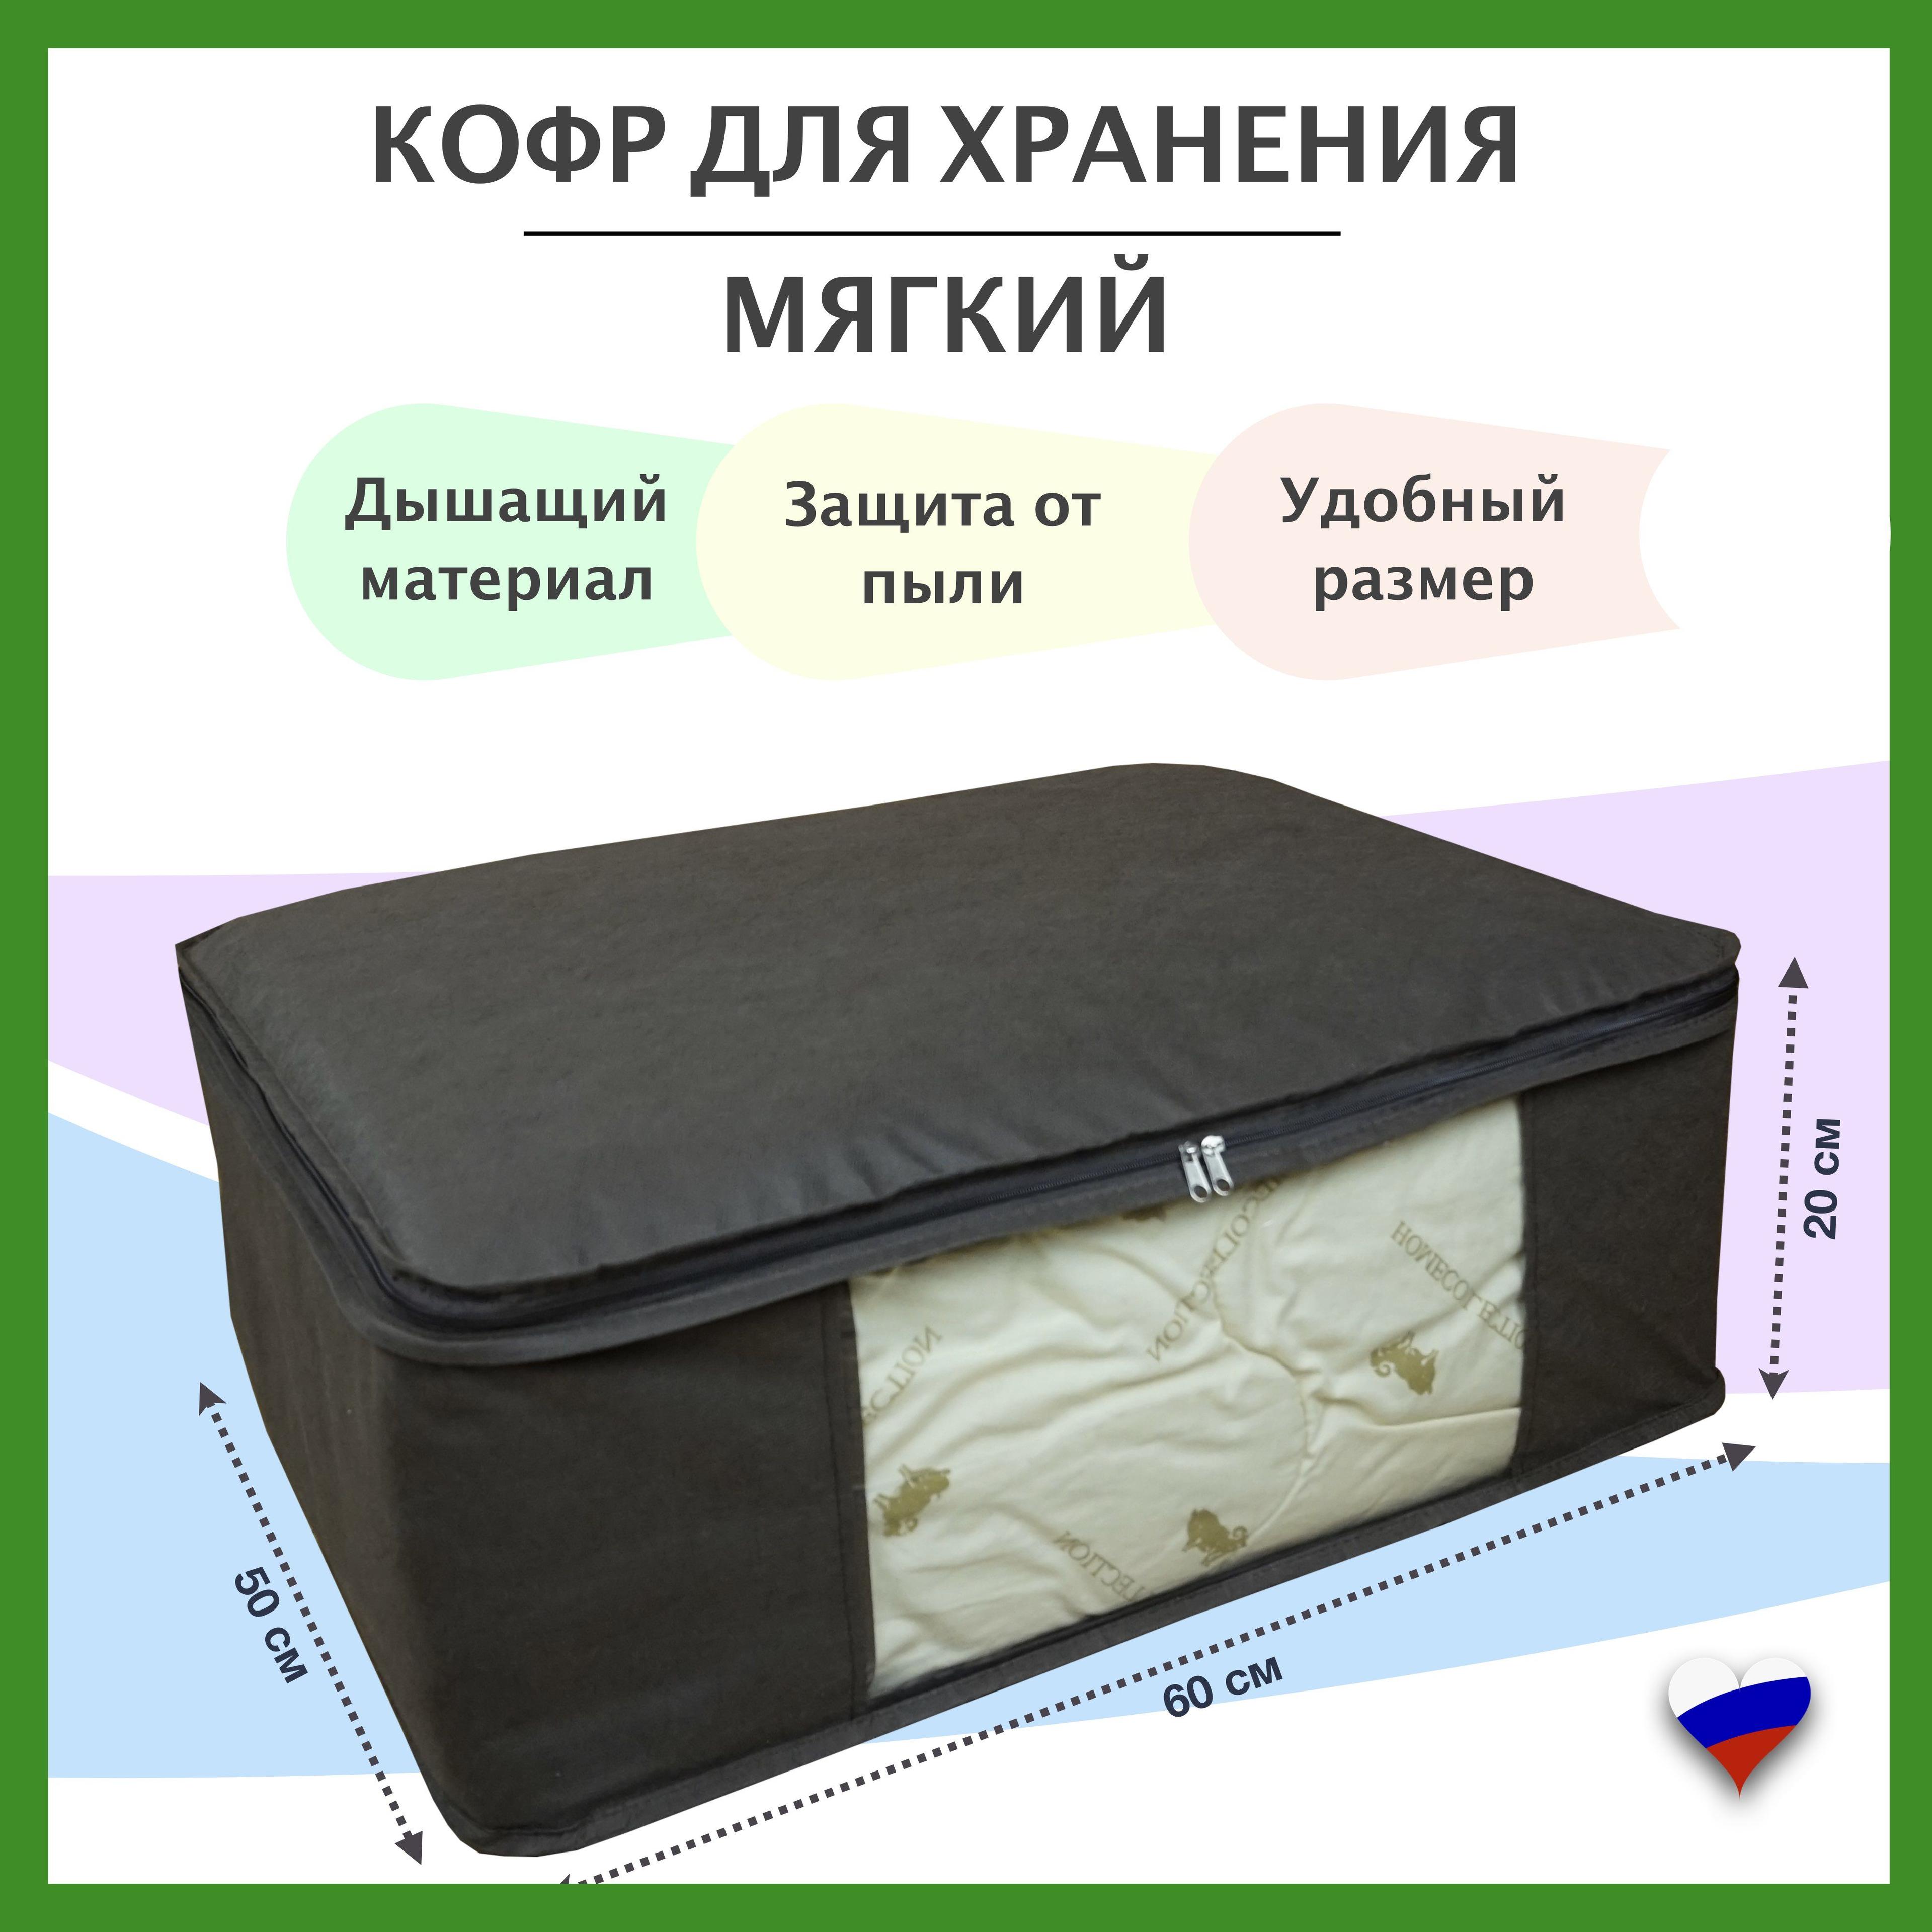 Kidrix Кофр для хранения вещей, 60 х 50 х 20 см, 1 шт